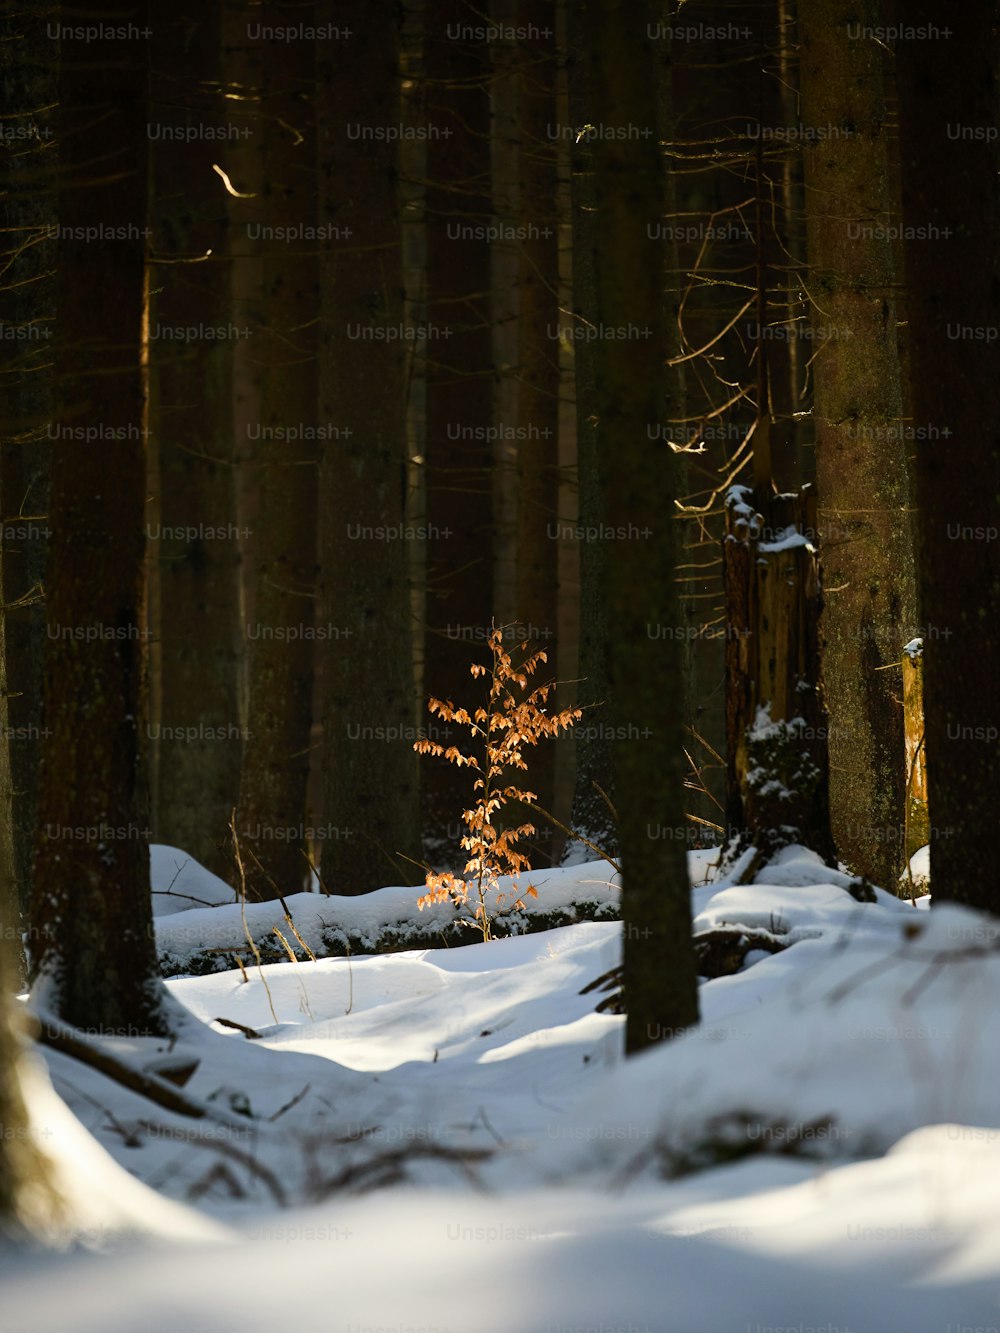 Ein kleiner Baum mitten in einem verschneiten Wald